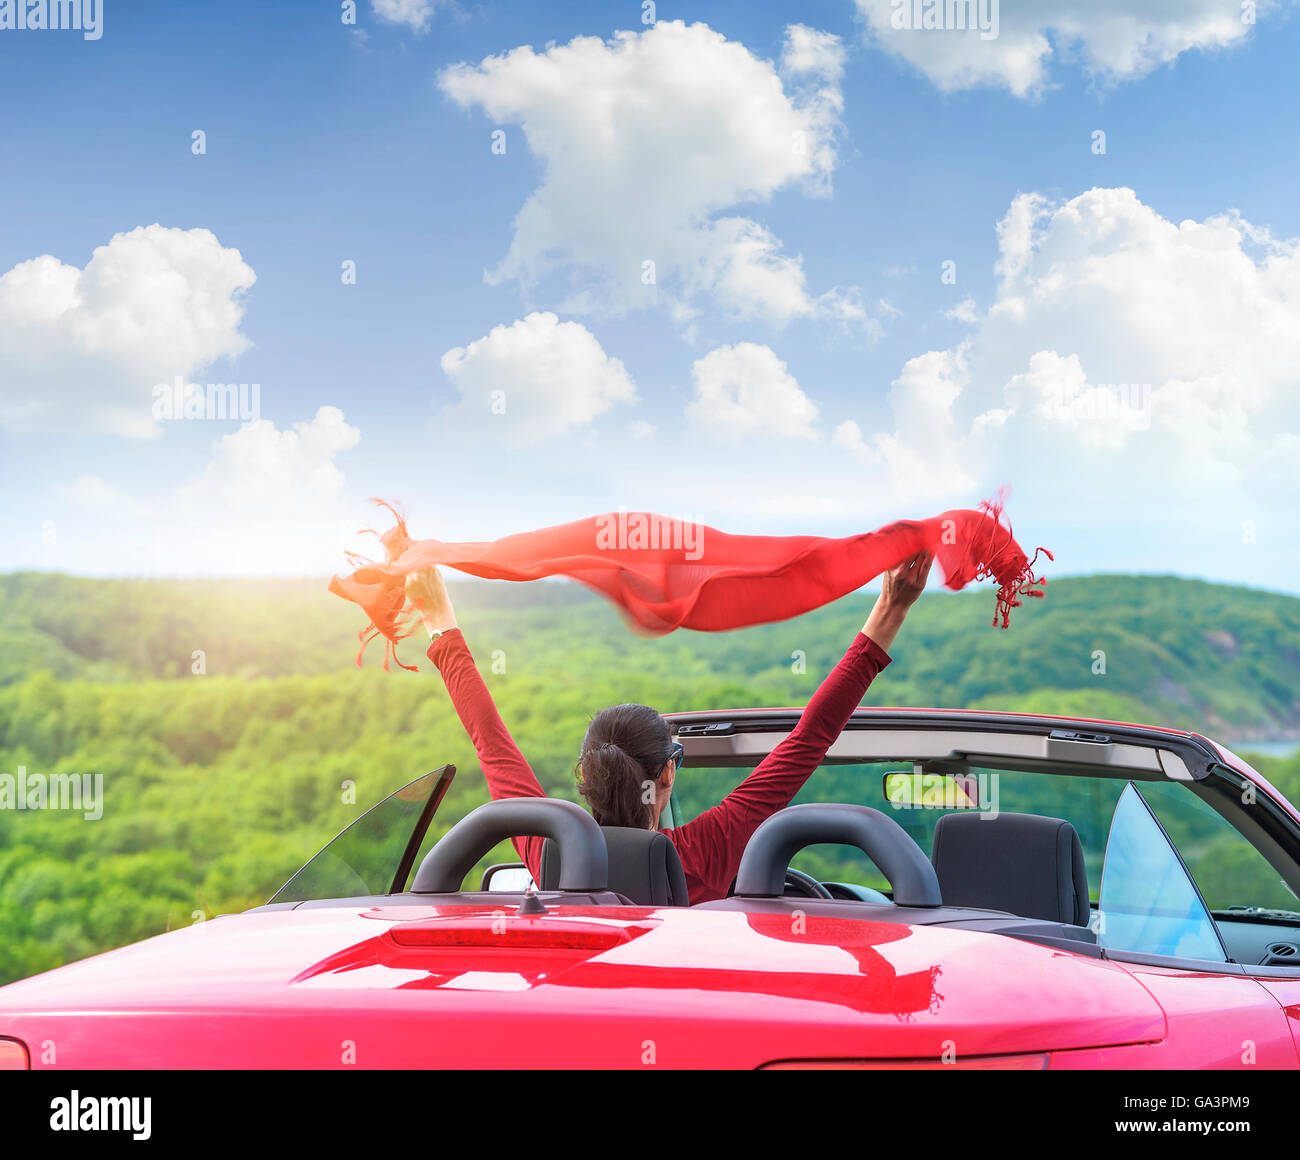 Mädchen in einem roten Cabrio Auto auf einem Hintergrund Seelandschaft mit  einem Schal im Wind wehende Stockfotografie - Alamy